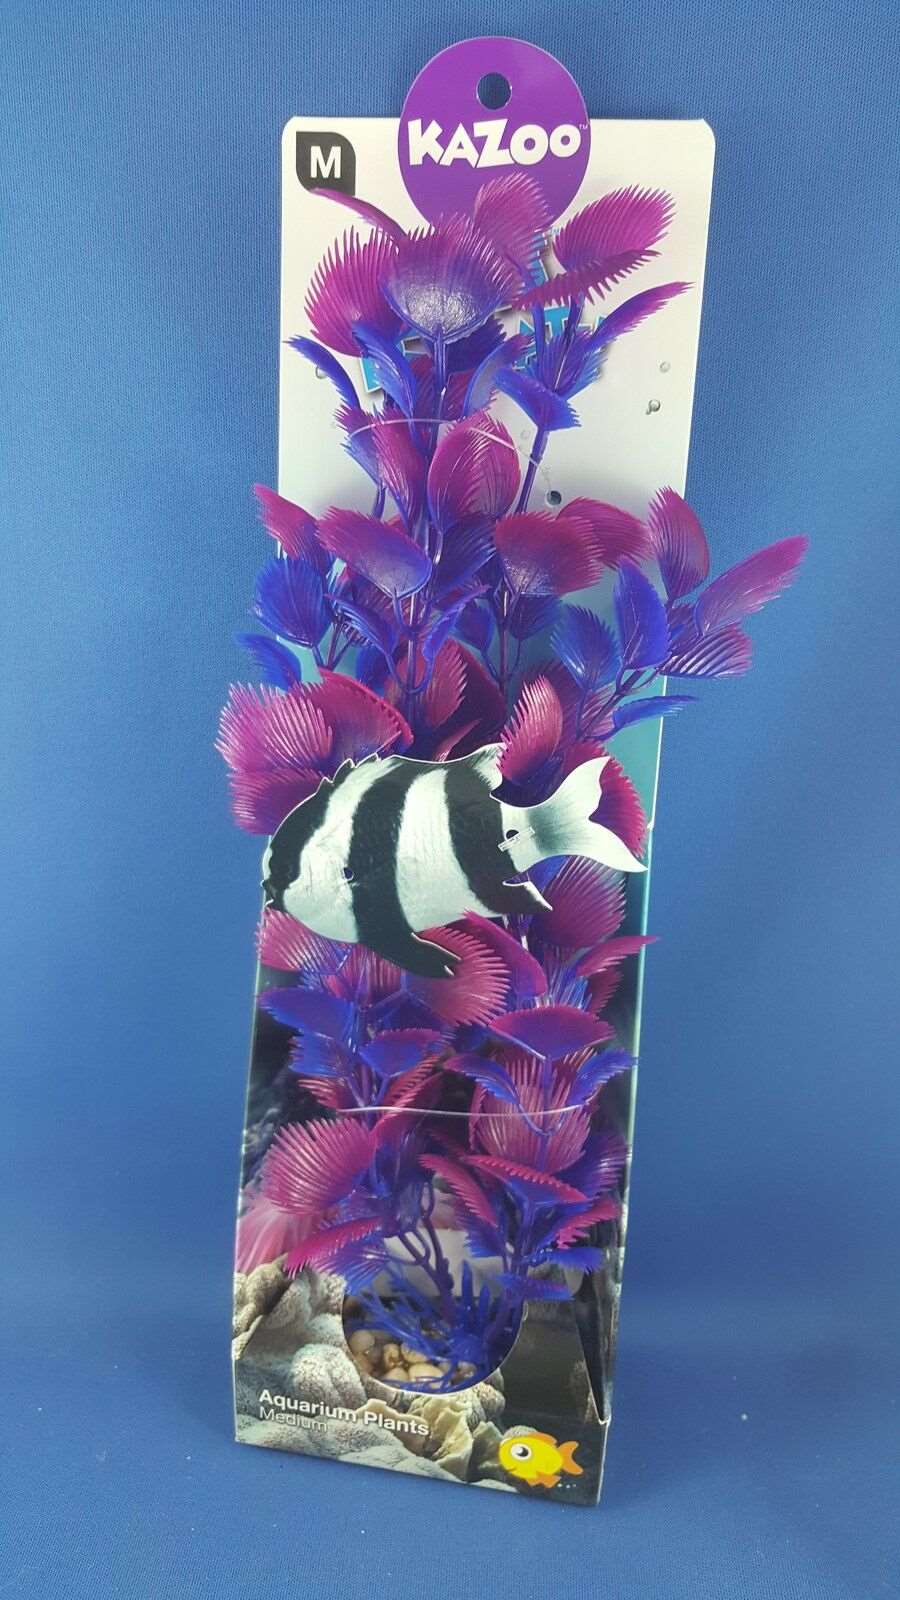 Kazoo aquarium plant, medium with purple leaves with solid pebble base